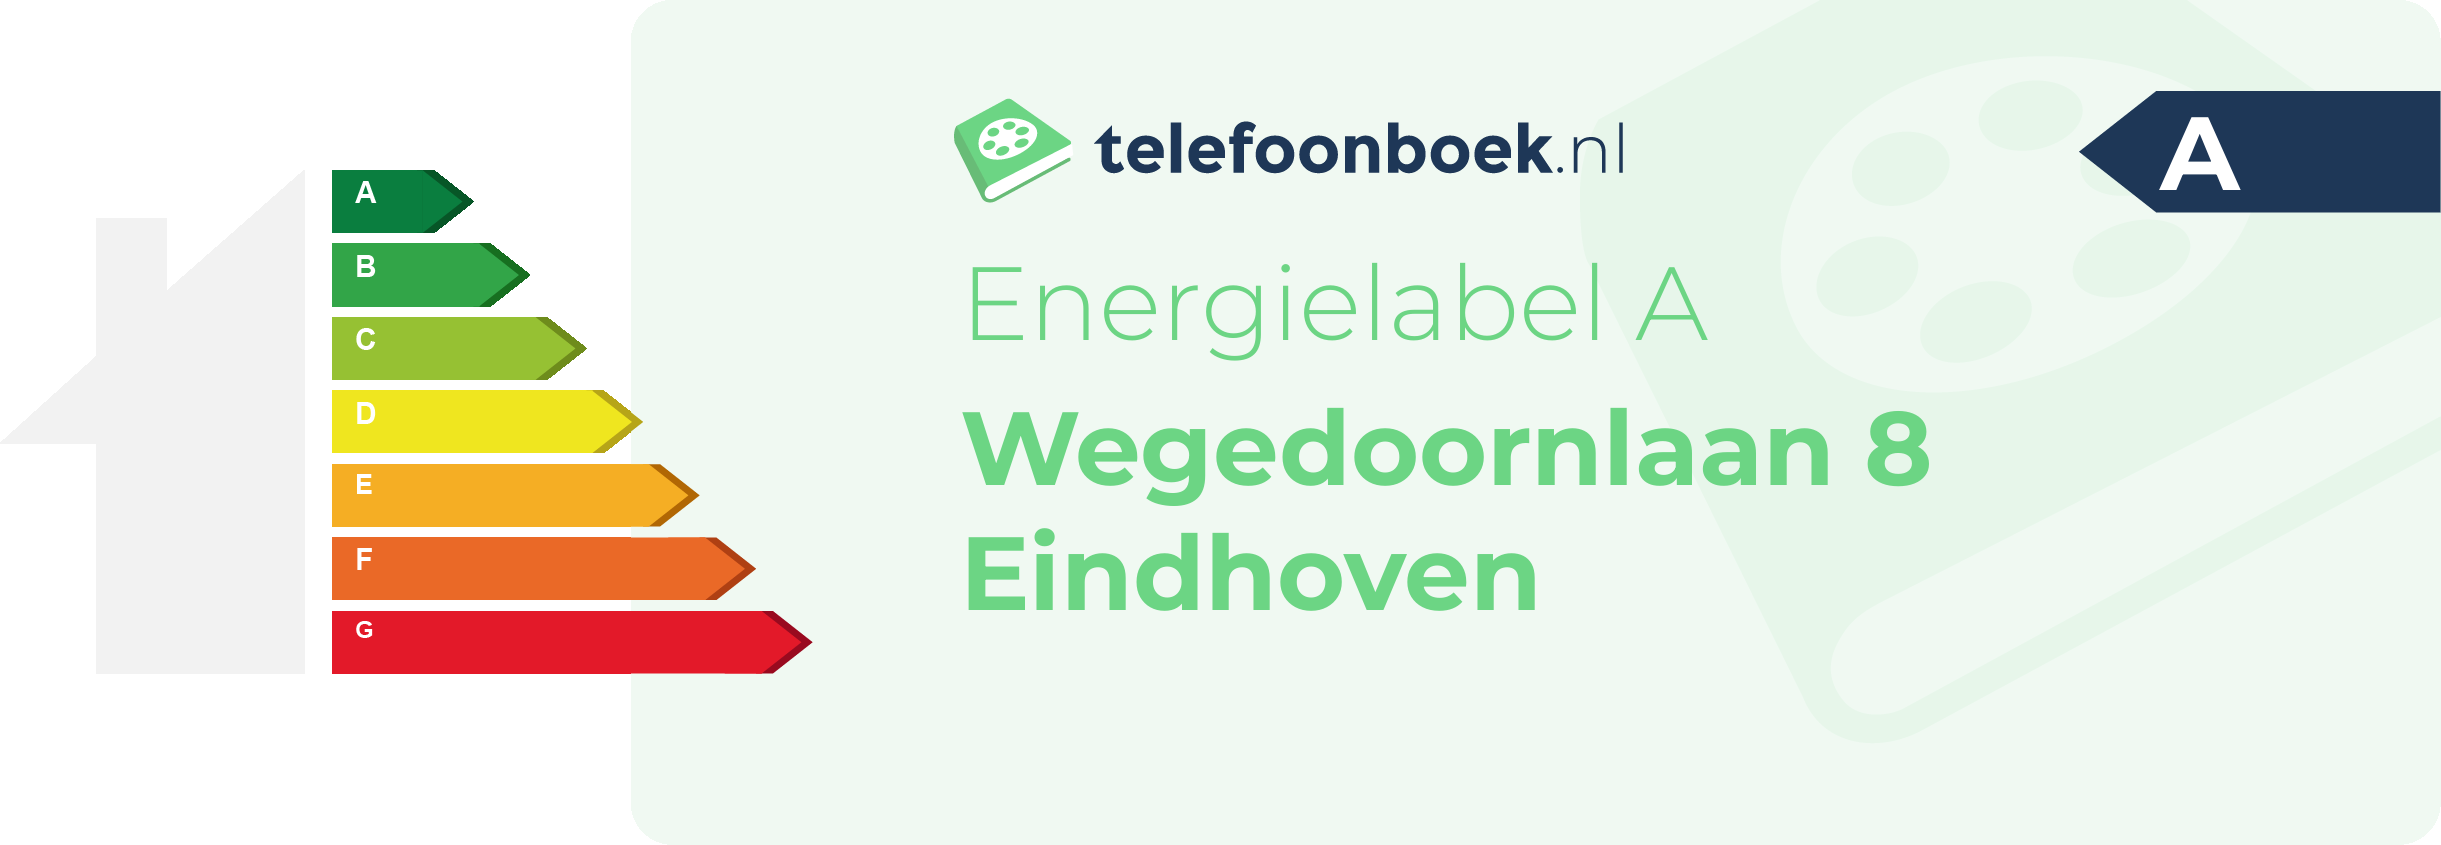 Energielabel Wegedoornlaan 8 Eindhoven